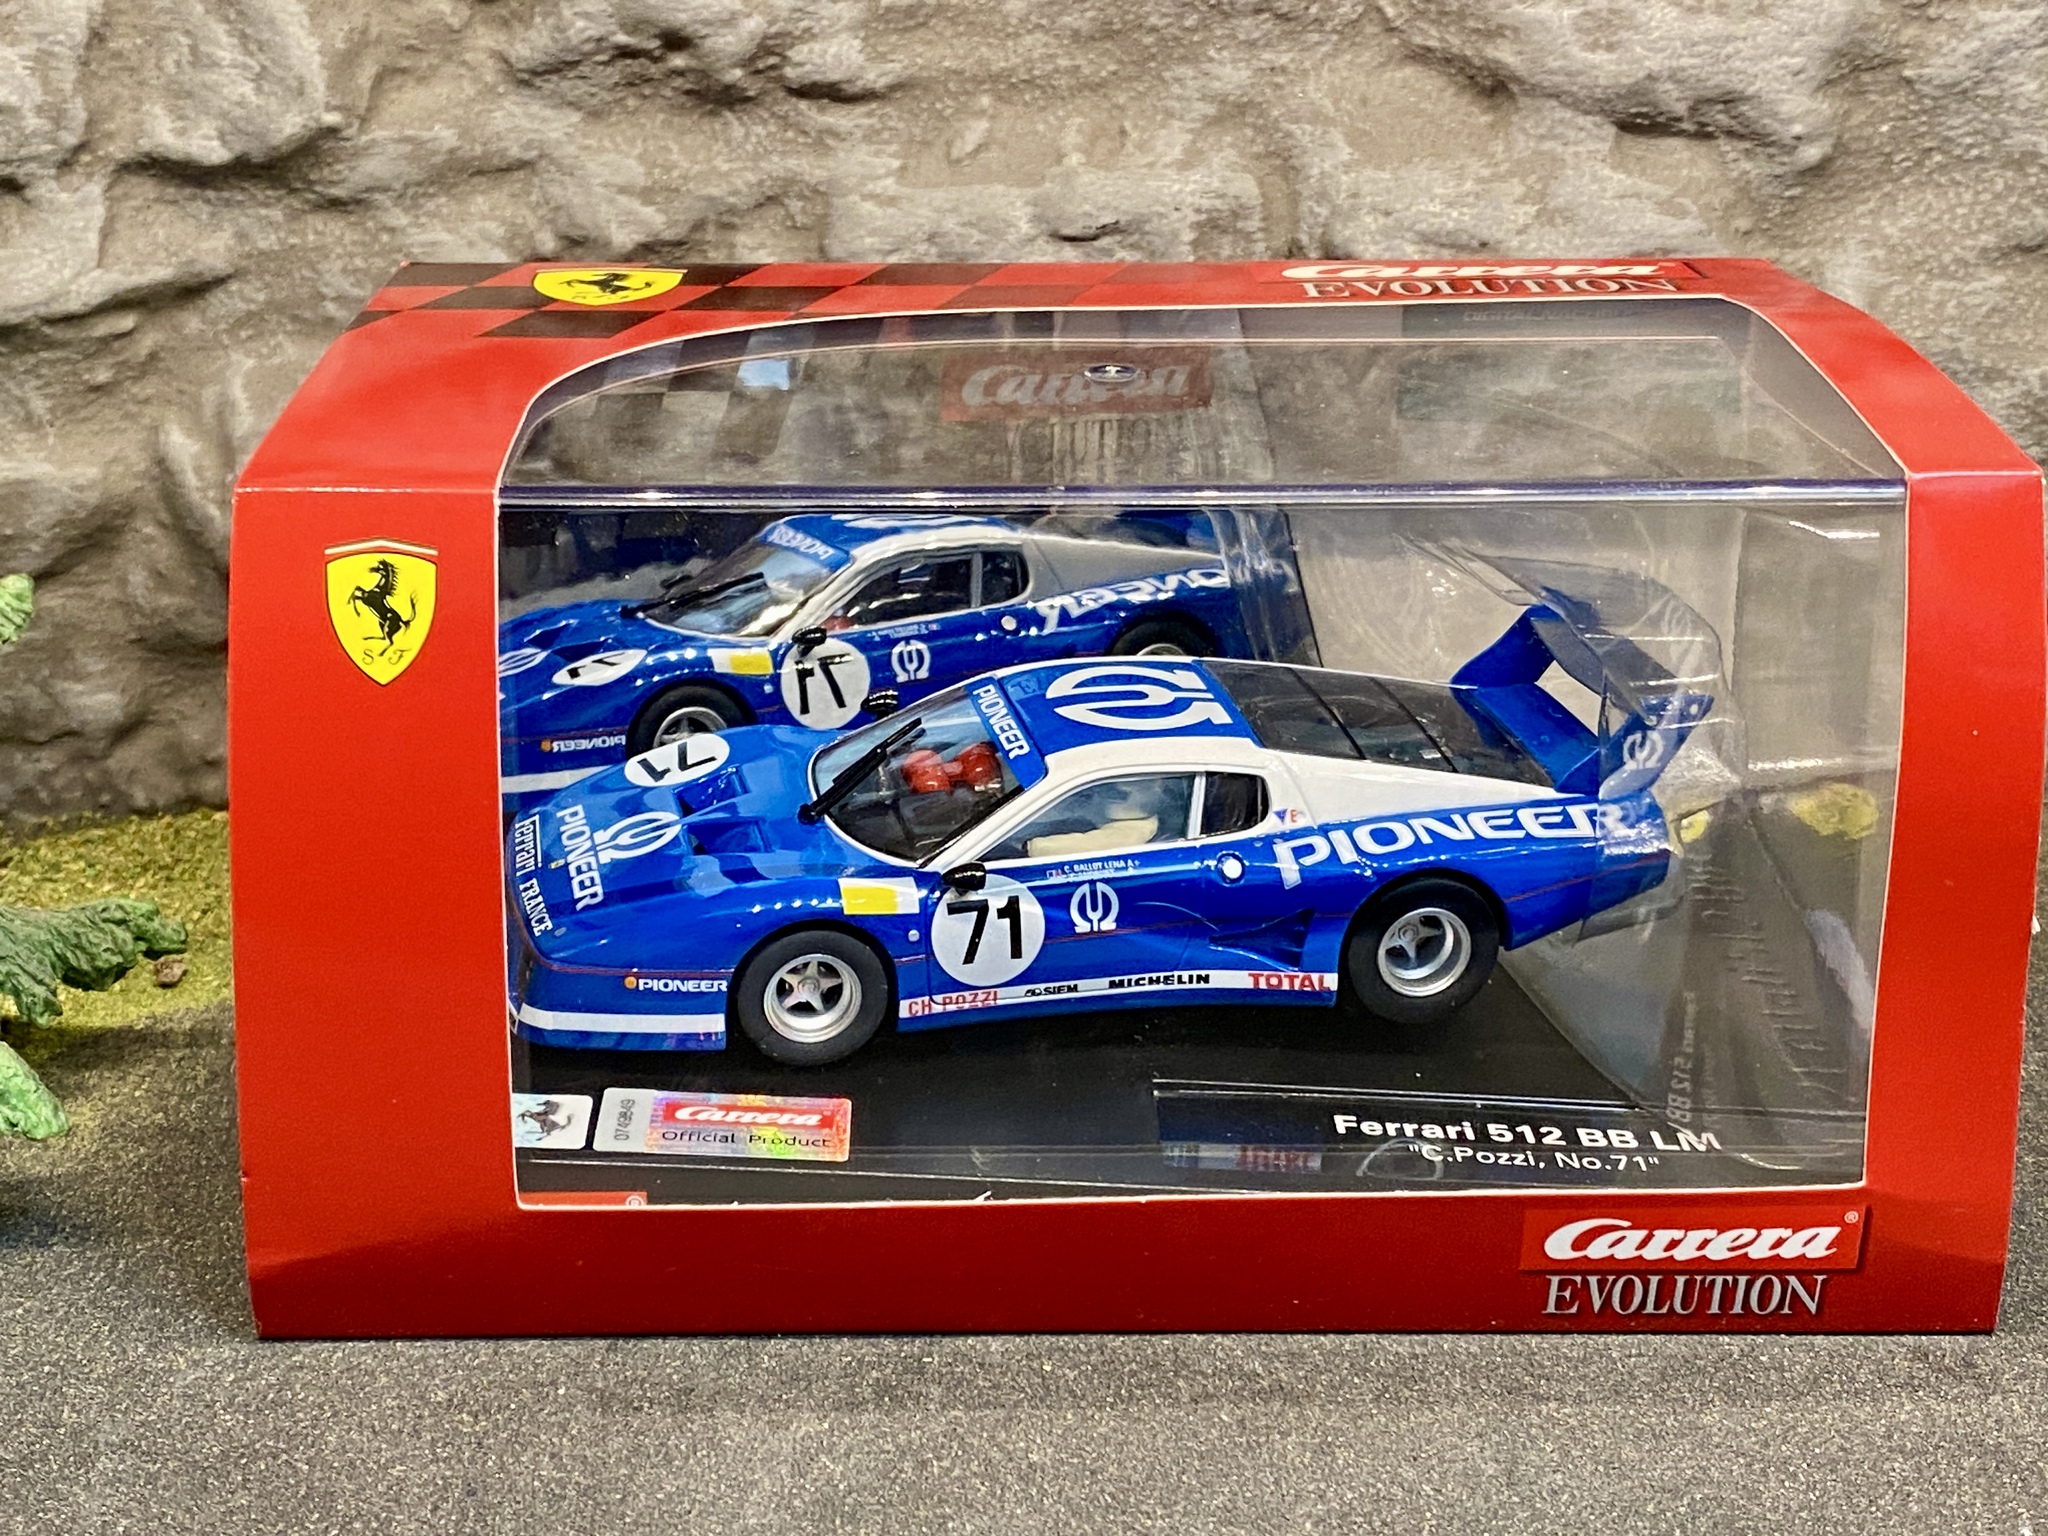 Skala 1/32 Analog bil till bilbana fr Carrera: Ferrari 512 BB LM C.Pozzi #71